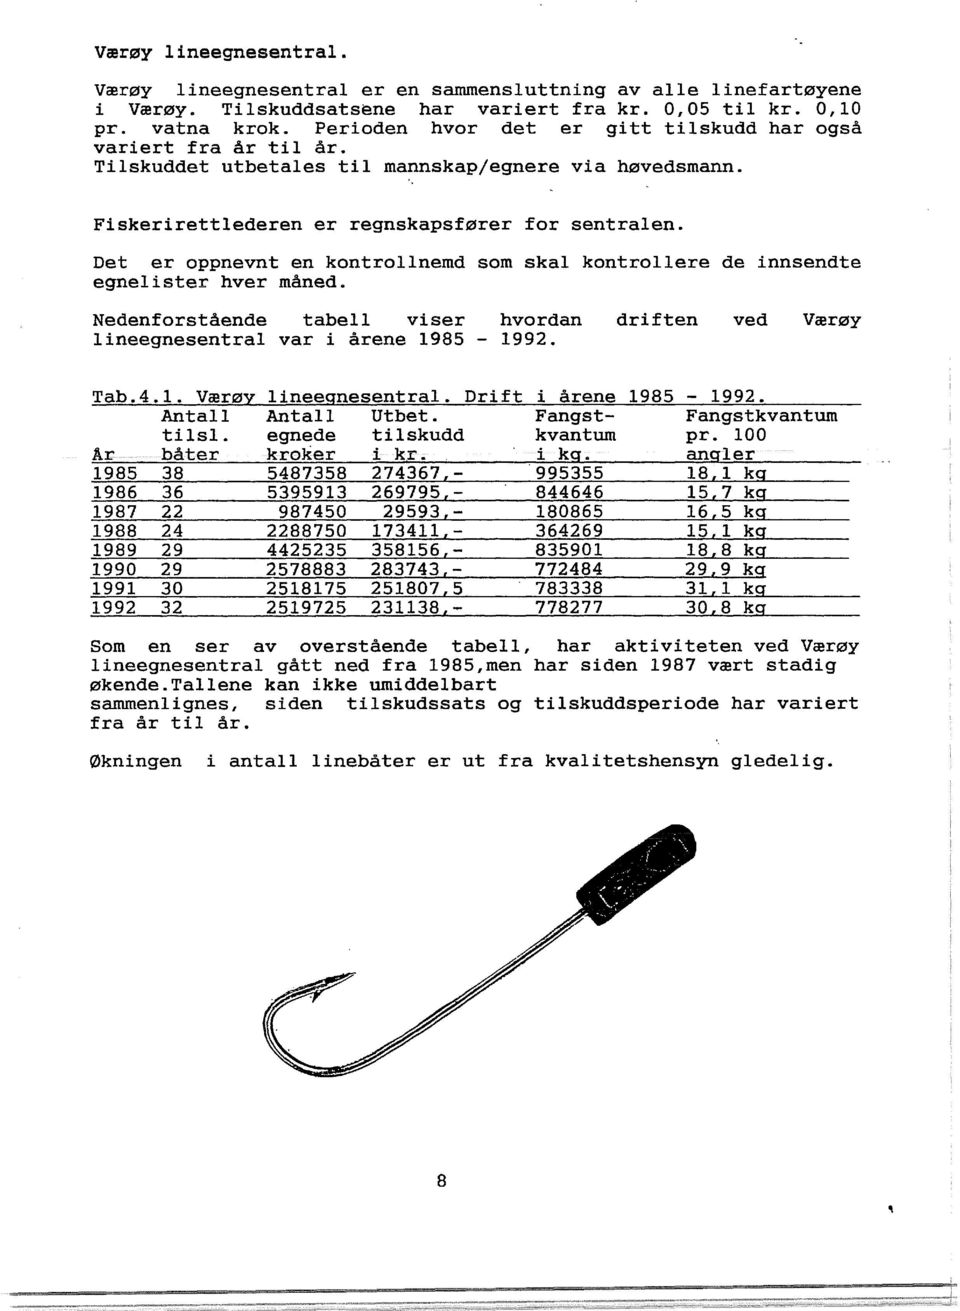 Det er oppnevnt en kontrollnemd som skal kontrollere de innsendte egnelister hver månede Nedenforstående tabell viser hvordan lineegnesentral var i årene 1985-1992. driften ved Værøy Tab.4.1. Værøy Antall tilsl.